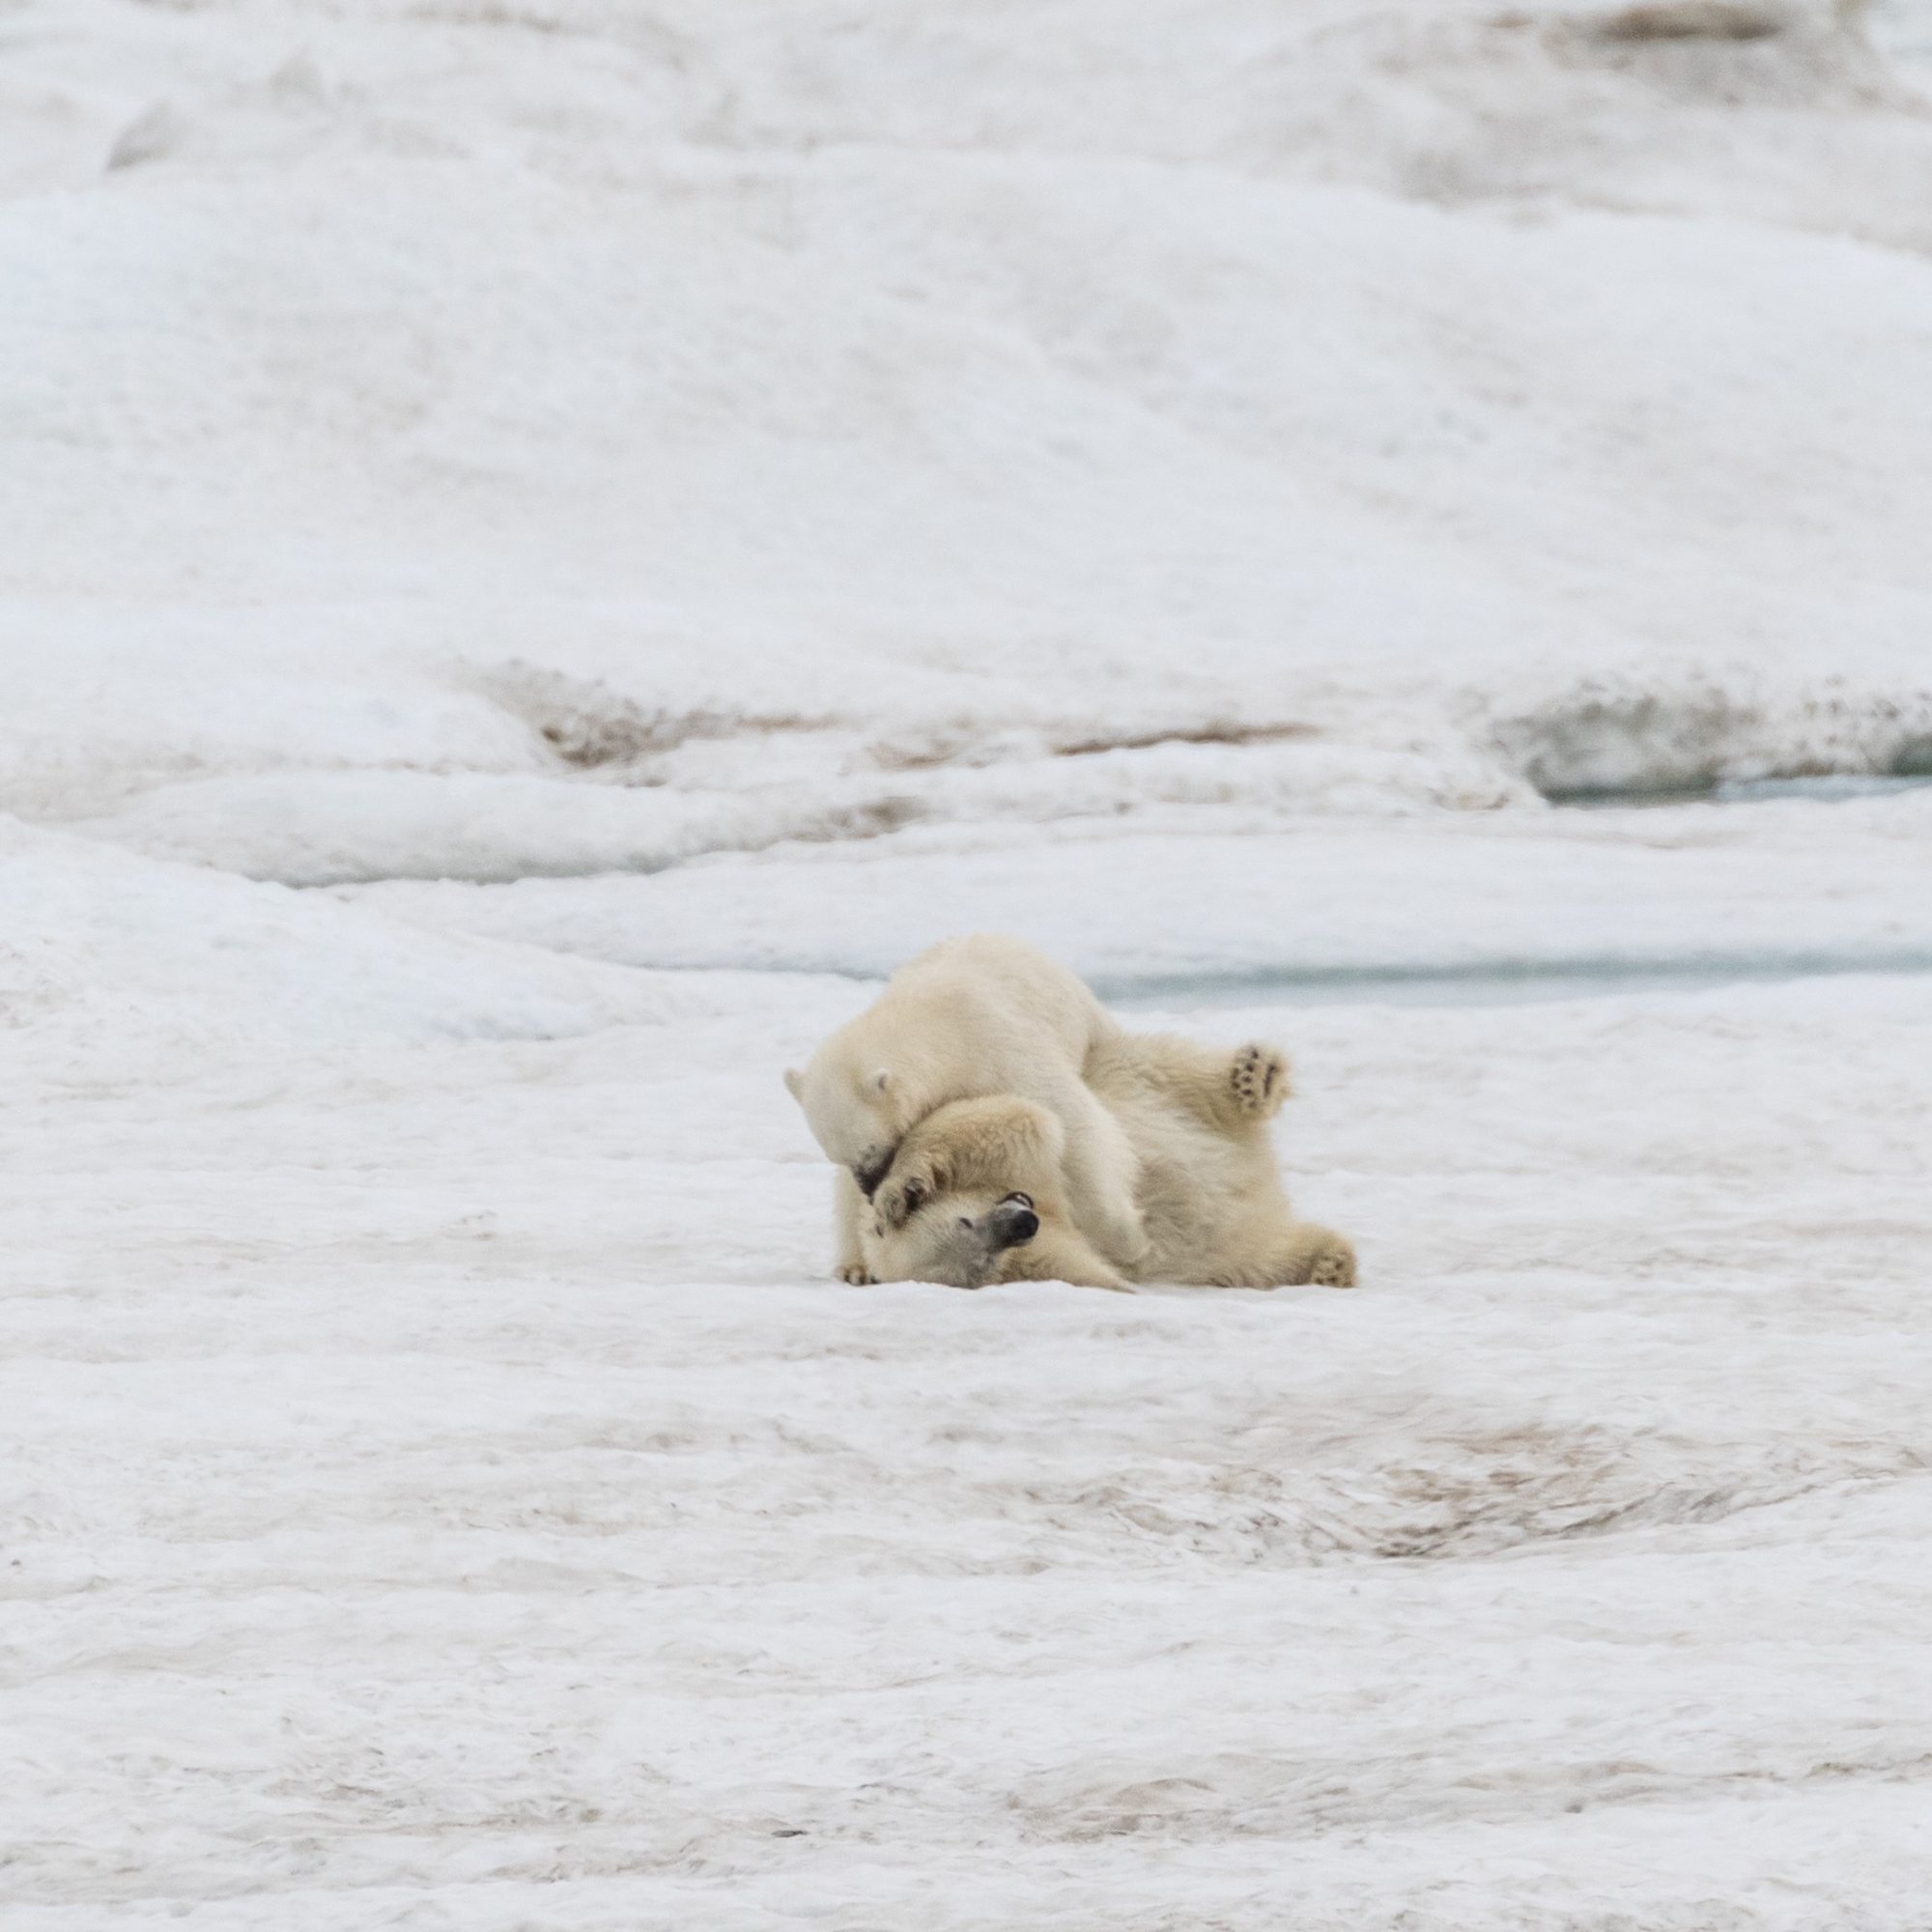 Playful Polar Bears – Wrangel Island 2018